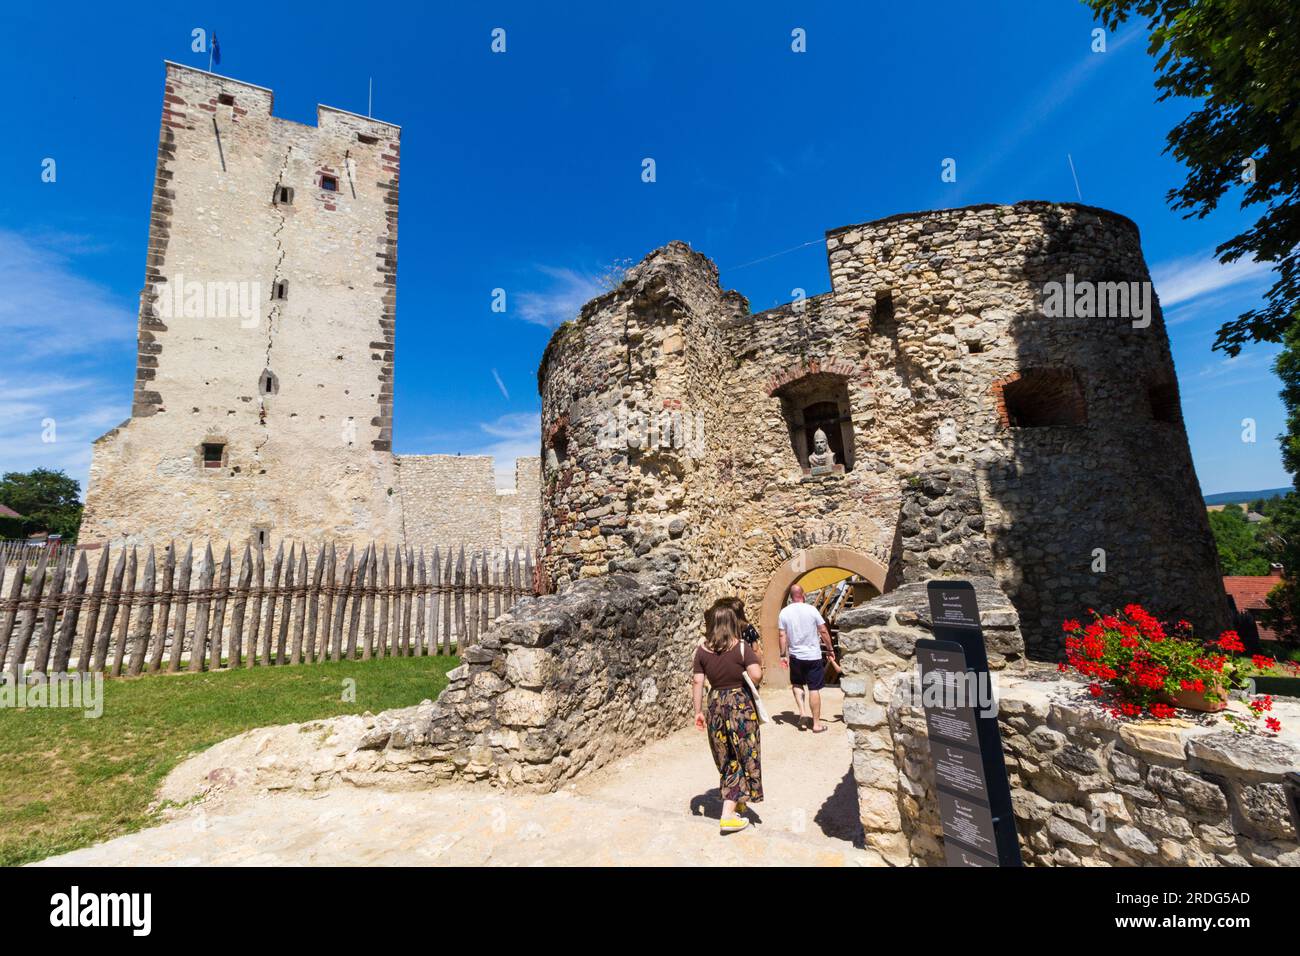 Les touristes marchent vers Kinizsi var (château de Kinizsi) originaire de la fin du 14e siècle, Nagyvazsony, Hongrie Banque D'Images